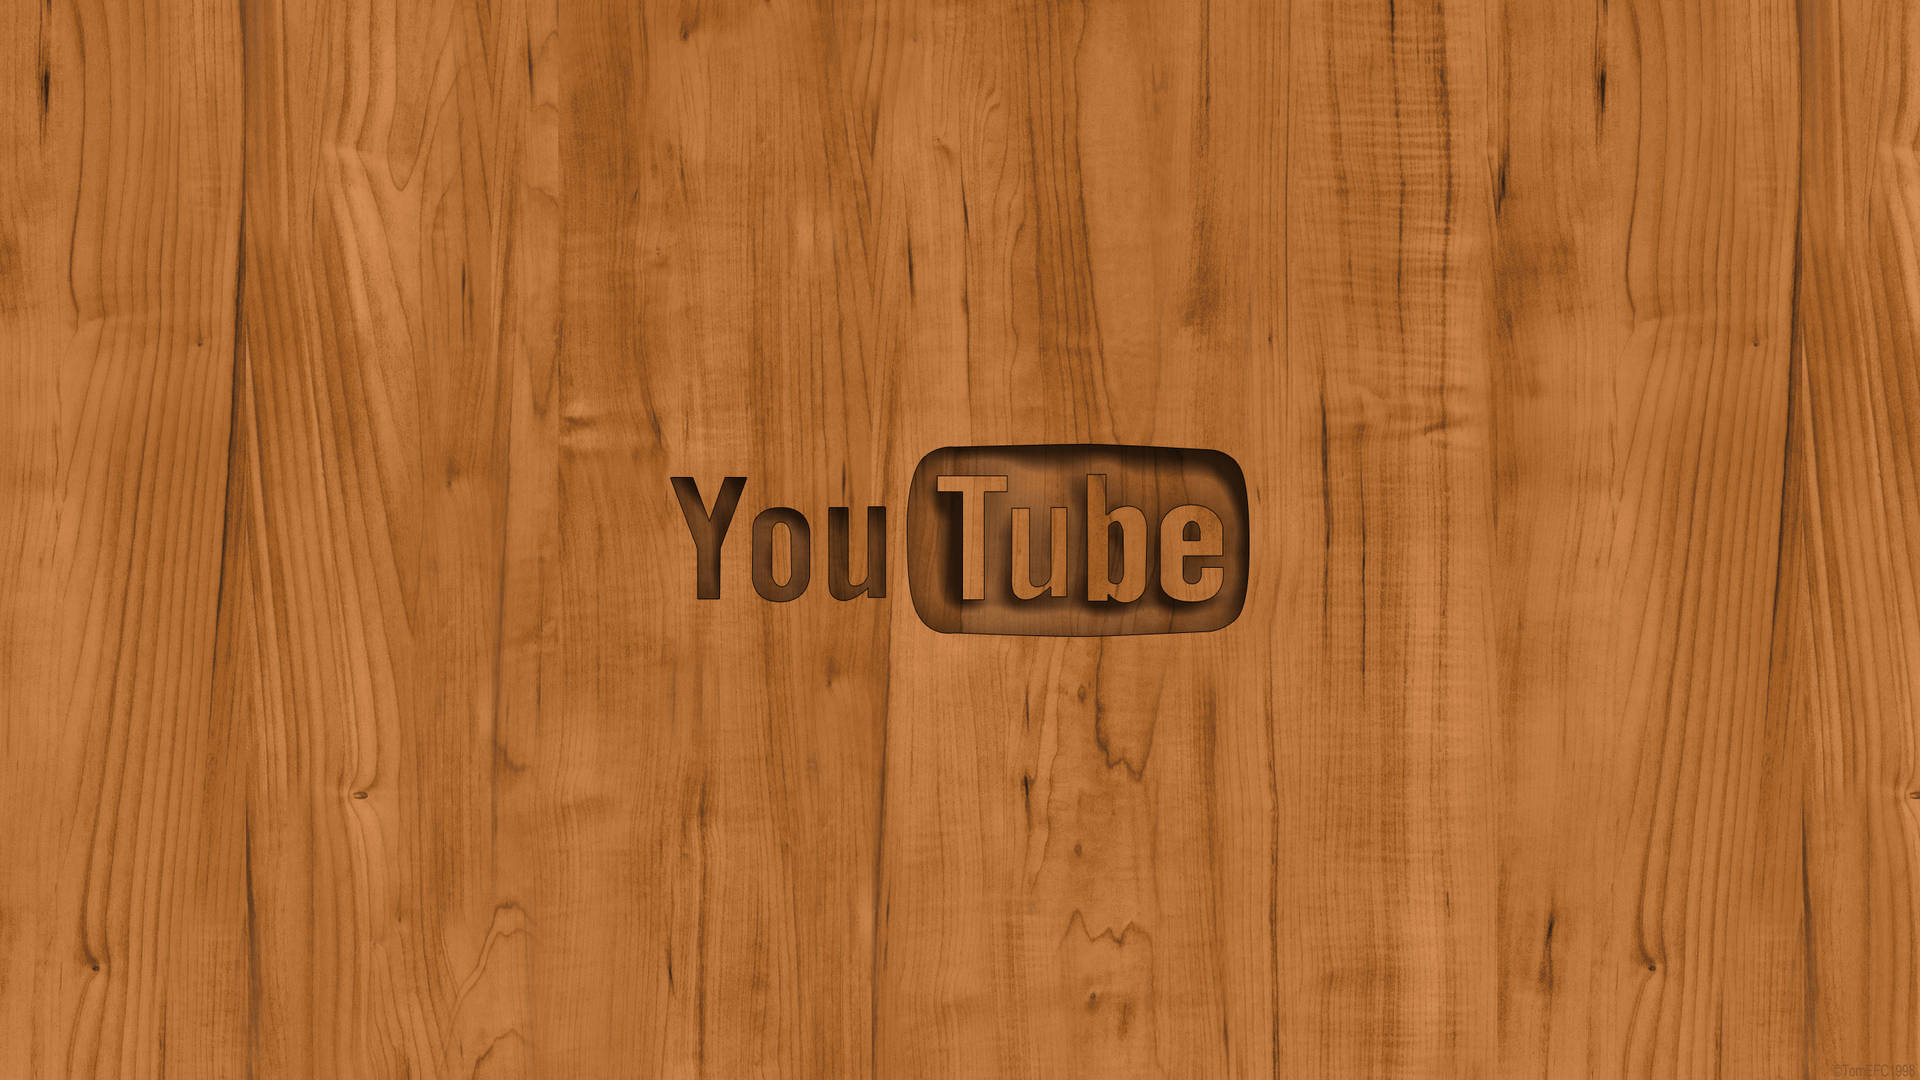 Youtube Logo On Wood Background